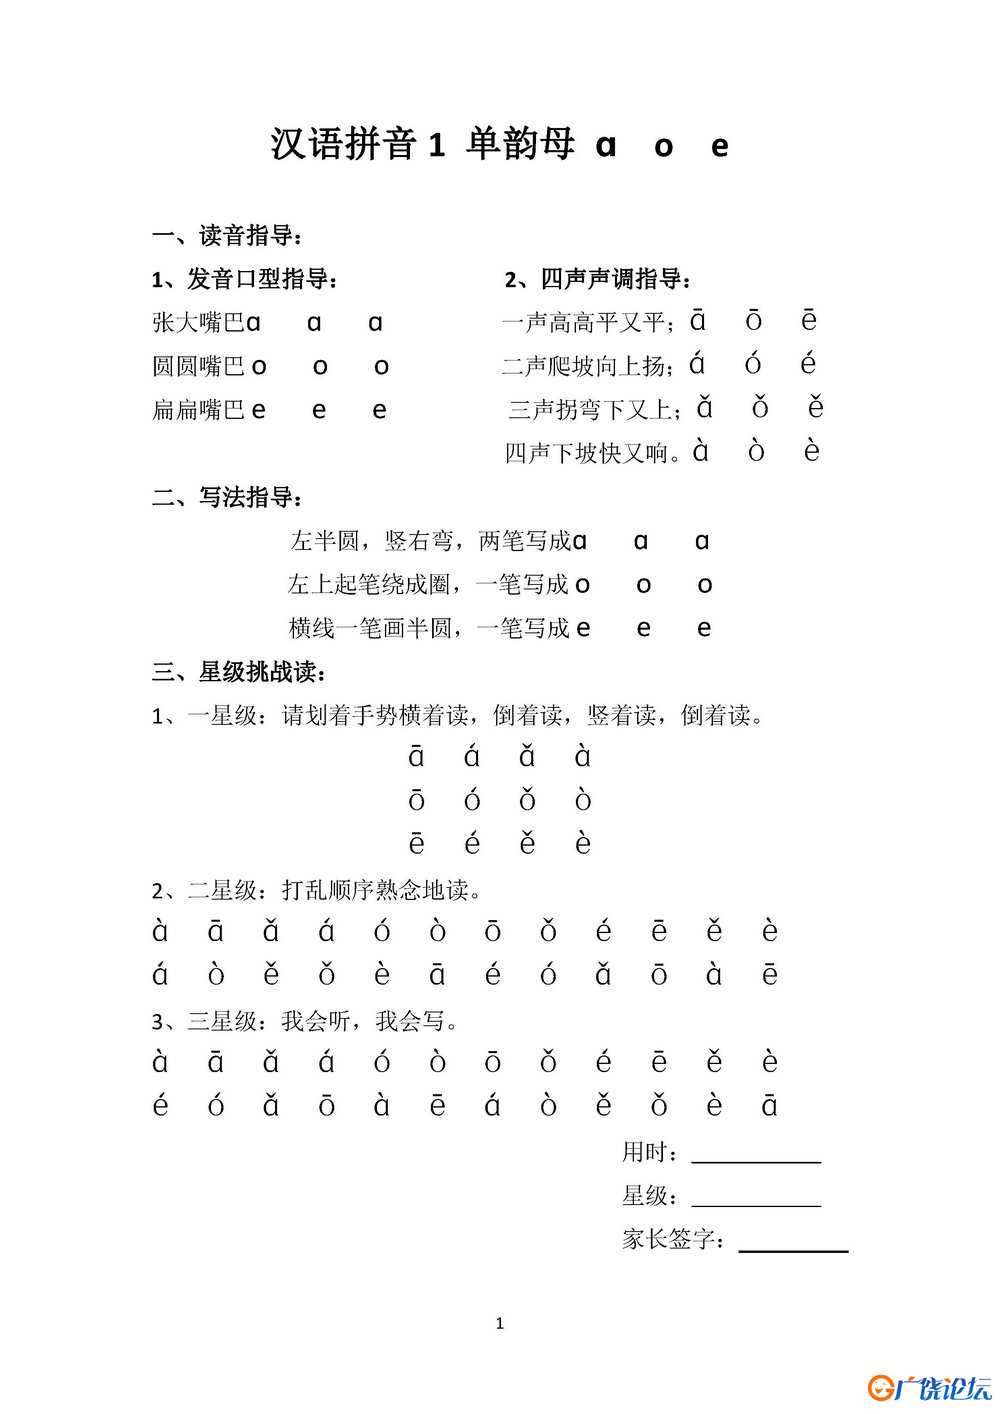 星级拼读天天练 22页PDF